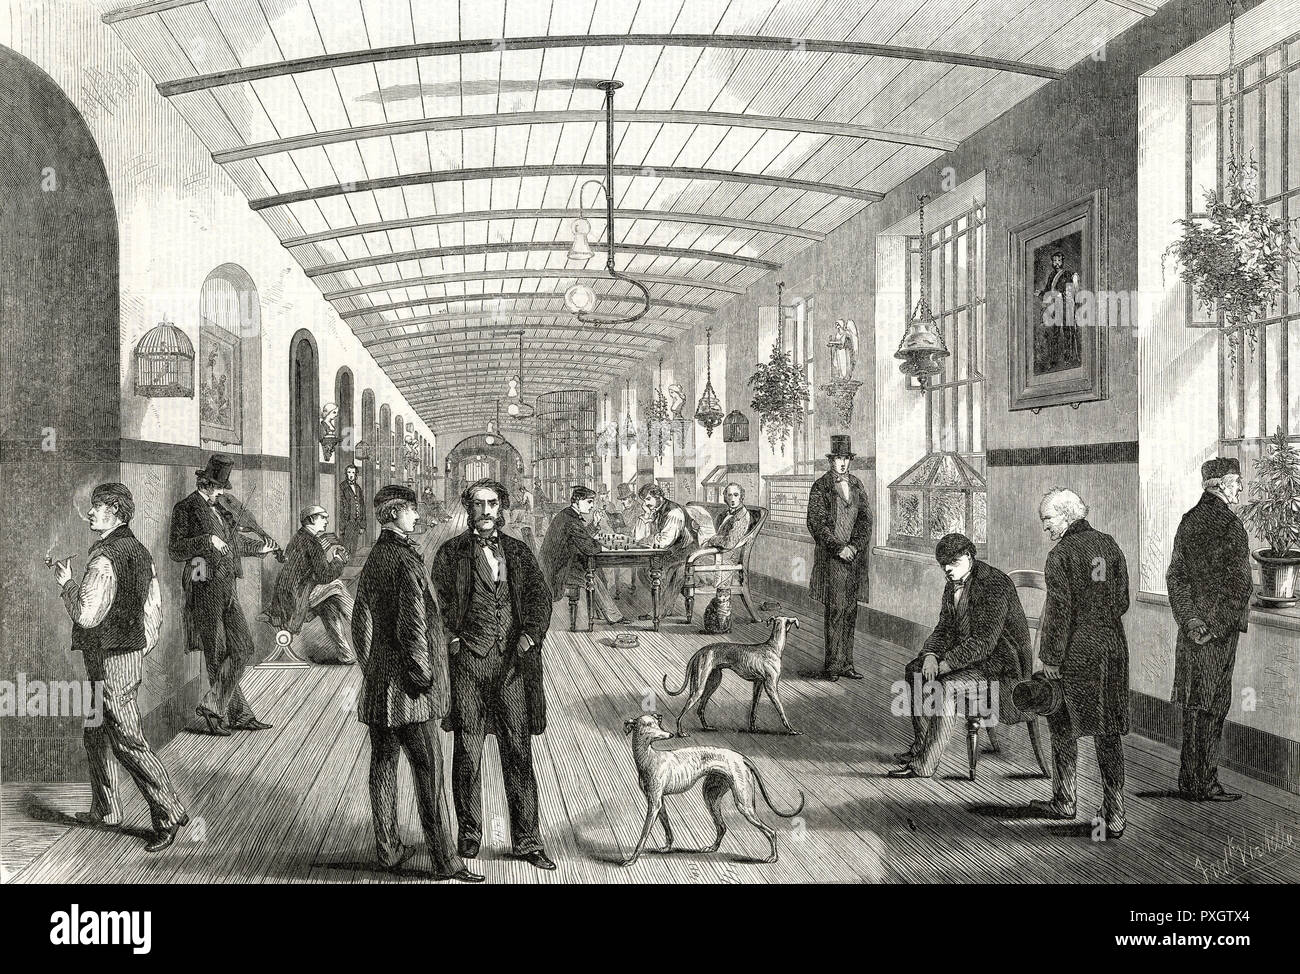 BETHLEHEM/GALERIE DES HOMMES 1860 Banque D'Images